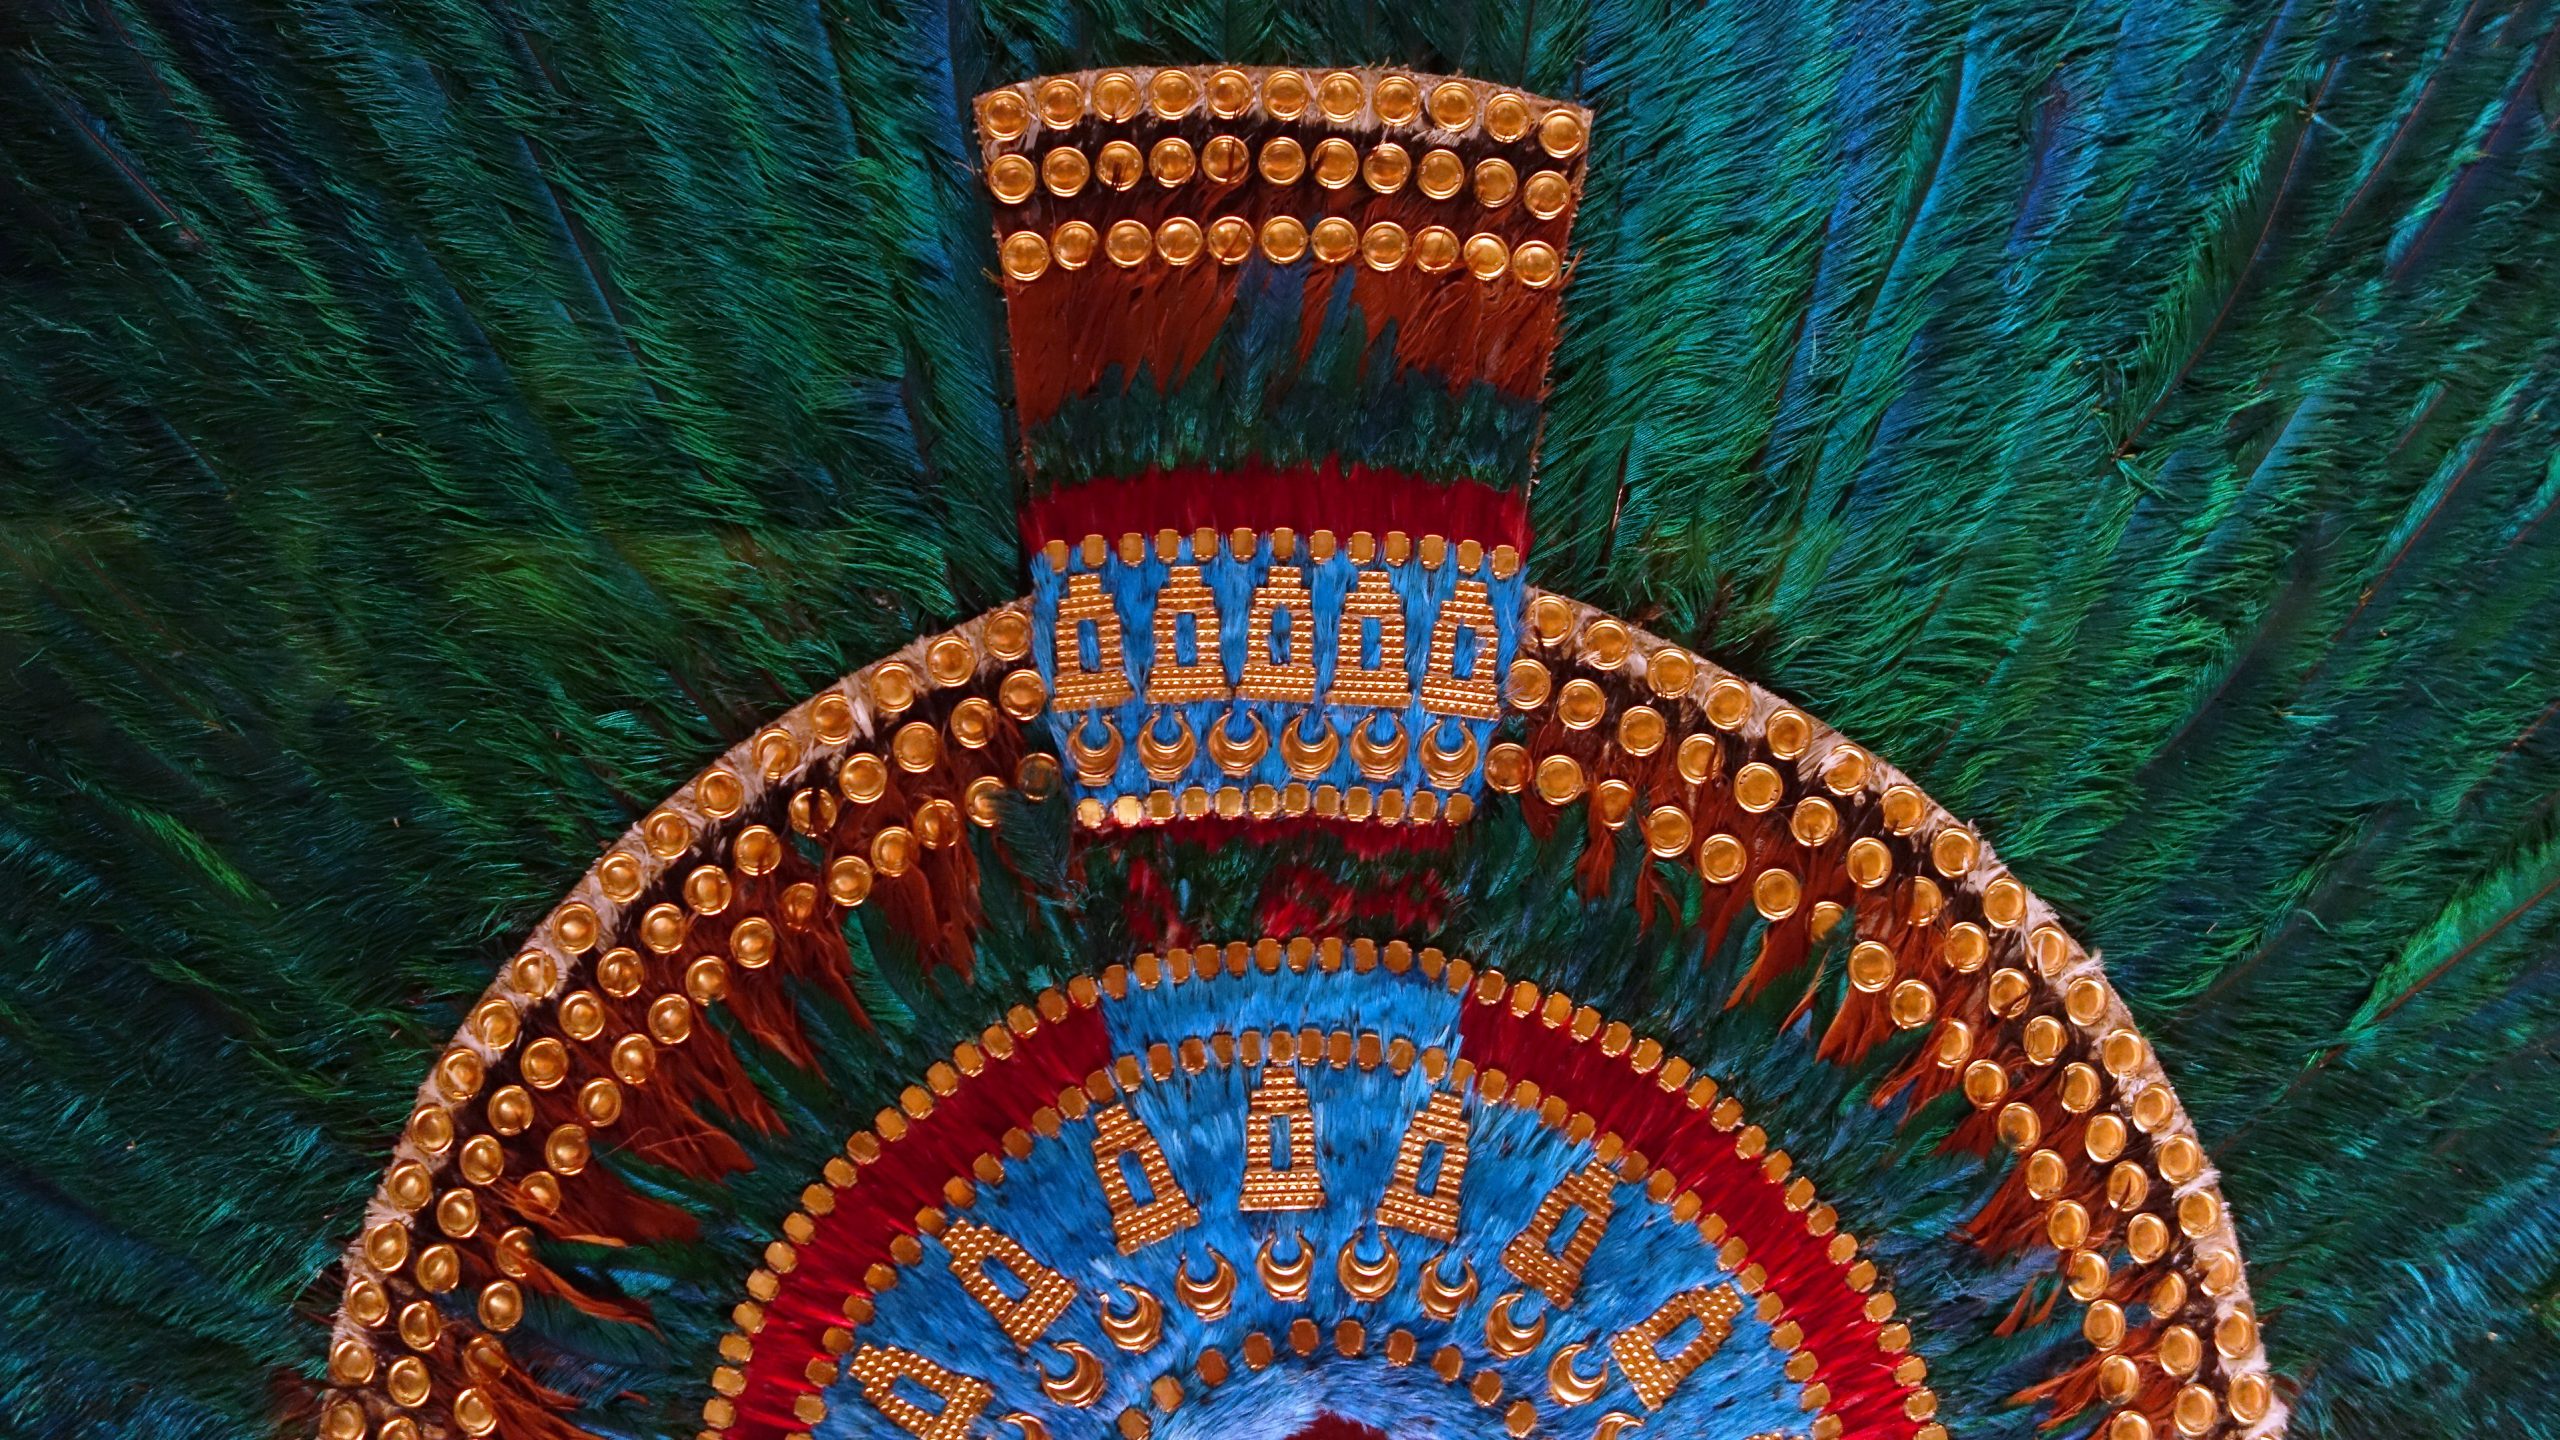 O magnífico cocar de Montezuma, o imperador asteca